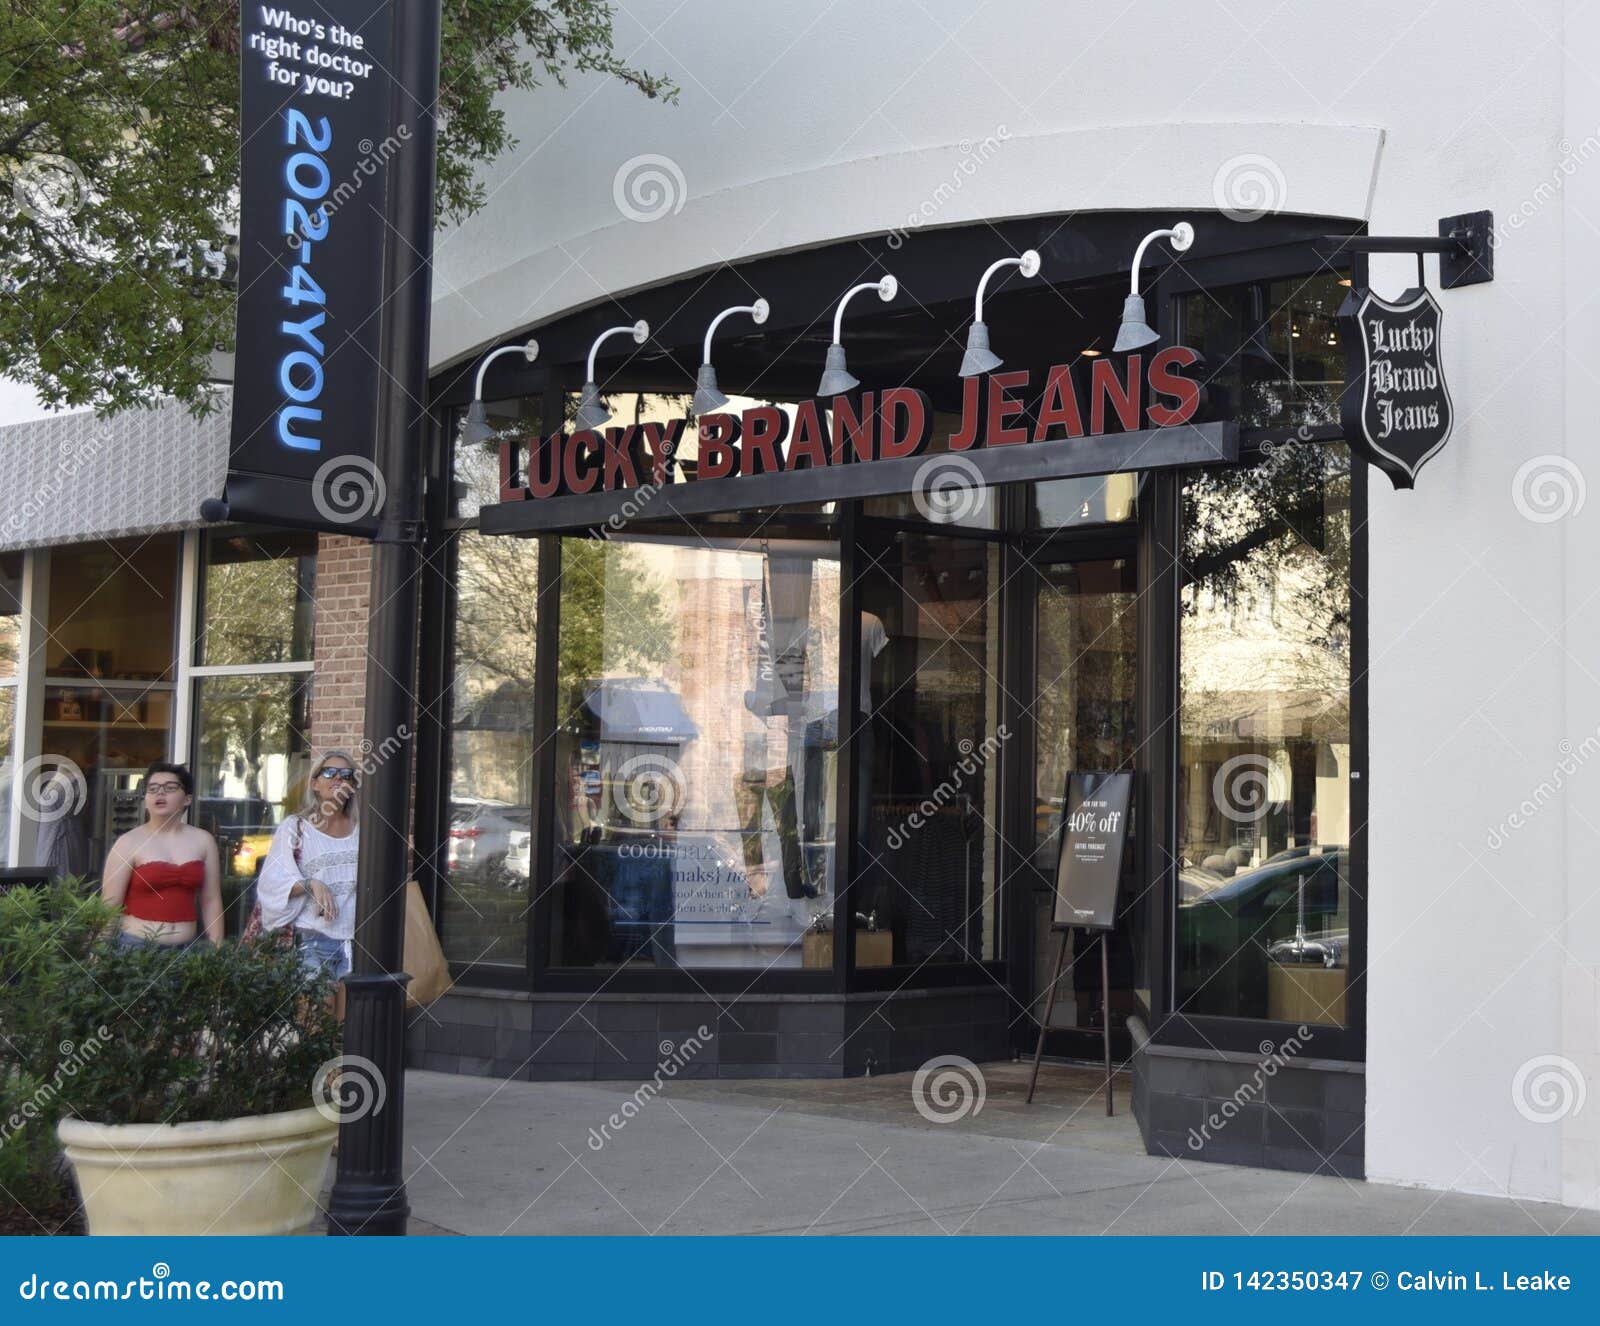 https://thumbs.dreamstime.com/z/lucky-brand-jeans-store-jacksonville-la-florida-es-una-compa%C3%B1%C3%ADa-americana-del-dril-de-algod%C3%B3n-fundada-en-vernon-california-por-142350347.jpg